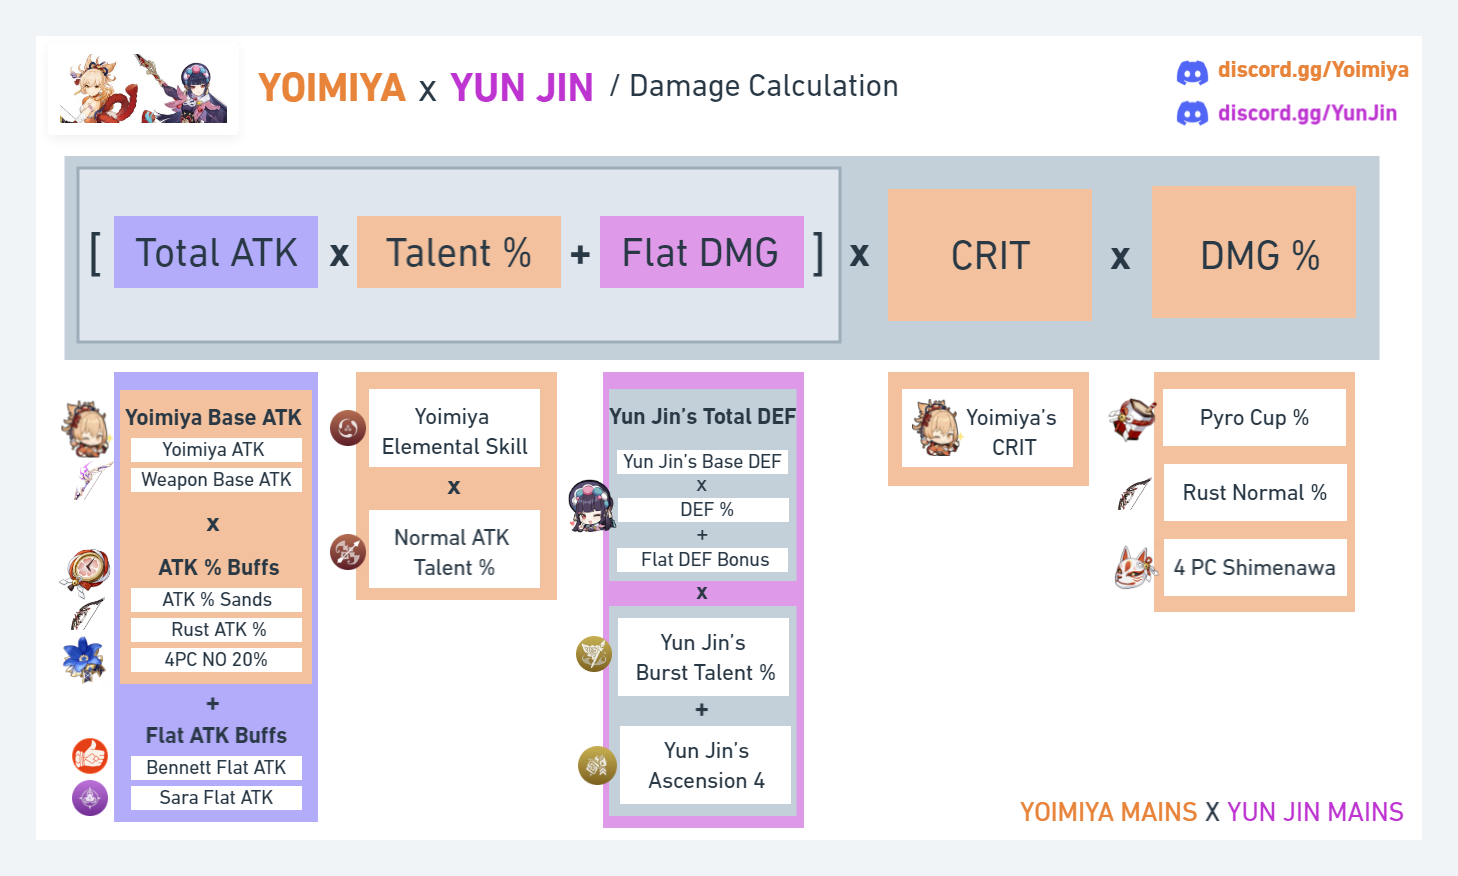 Yoimiya x Yun Jin Damage Calculation Infographic by Swiftfyre#0502